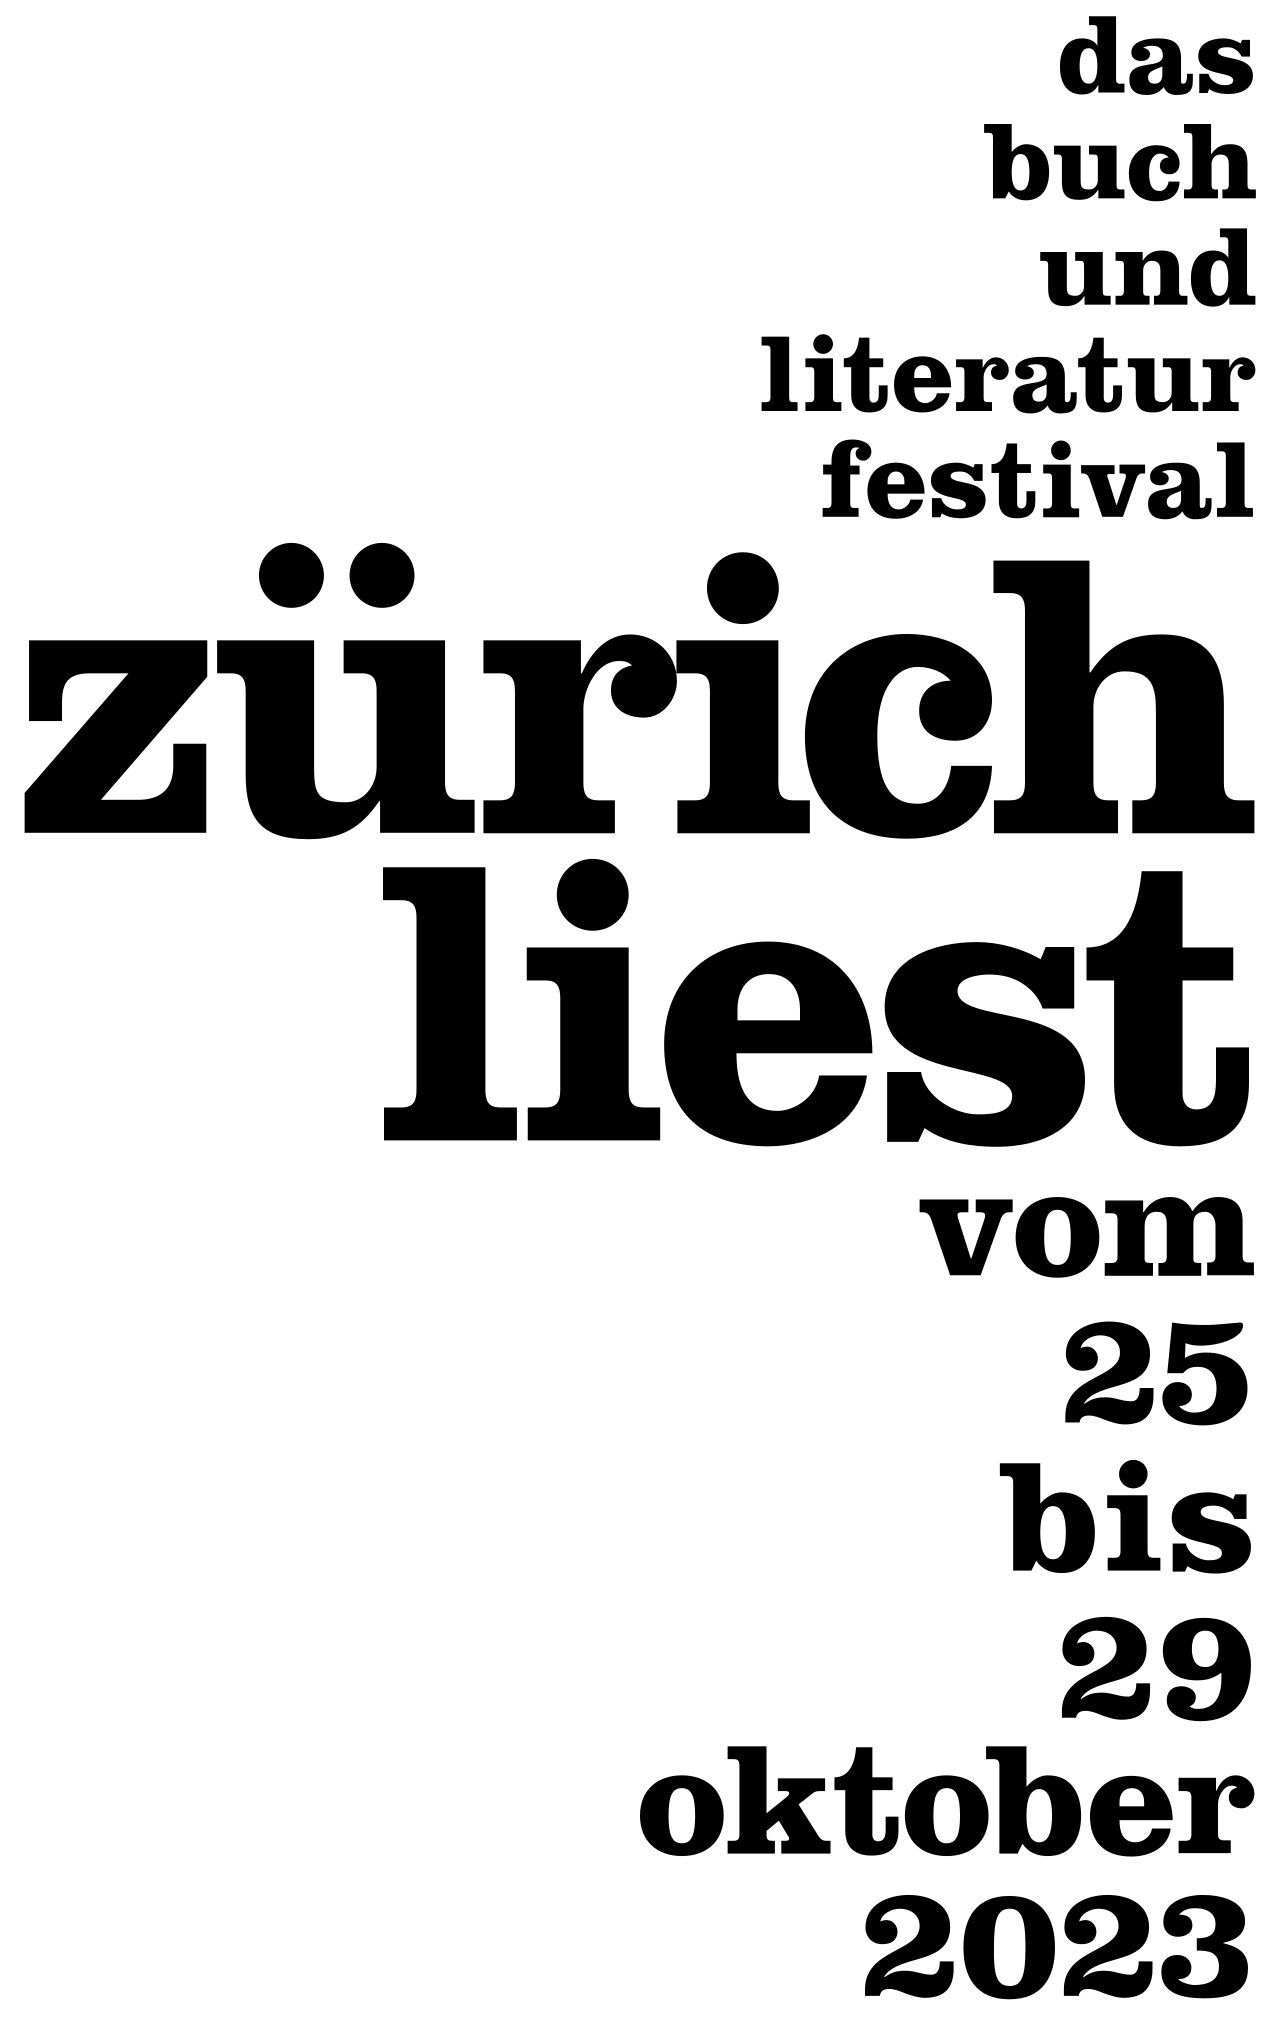 Zürich liest: October 20, 2023 - October 30, 2023